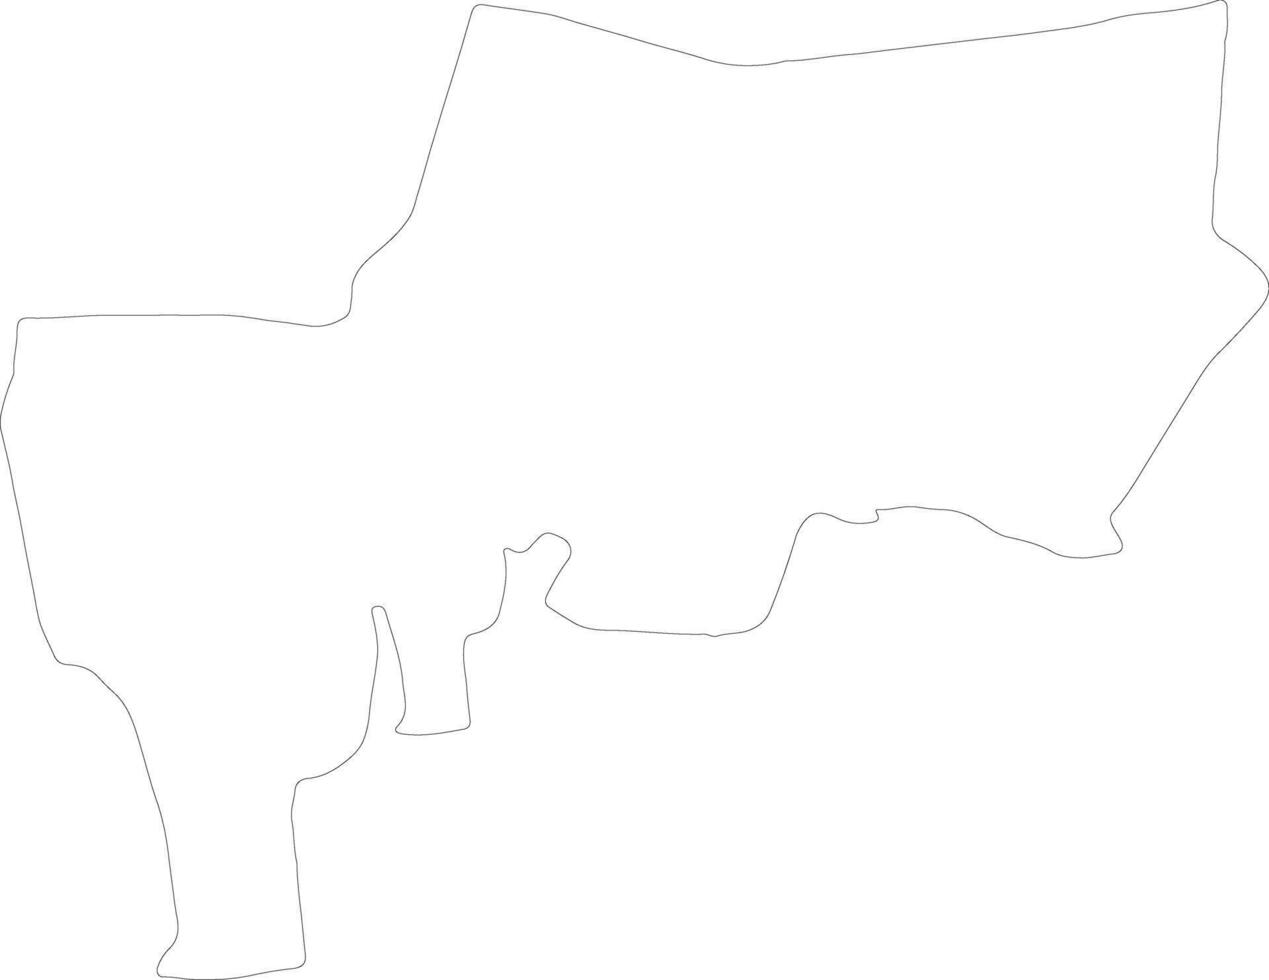 Bangkok metrópoli Tailandia contorno mapa vector